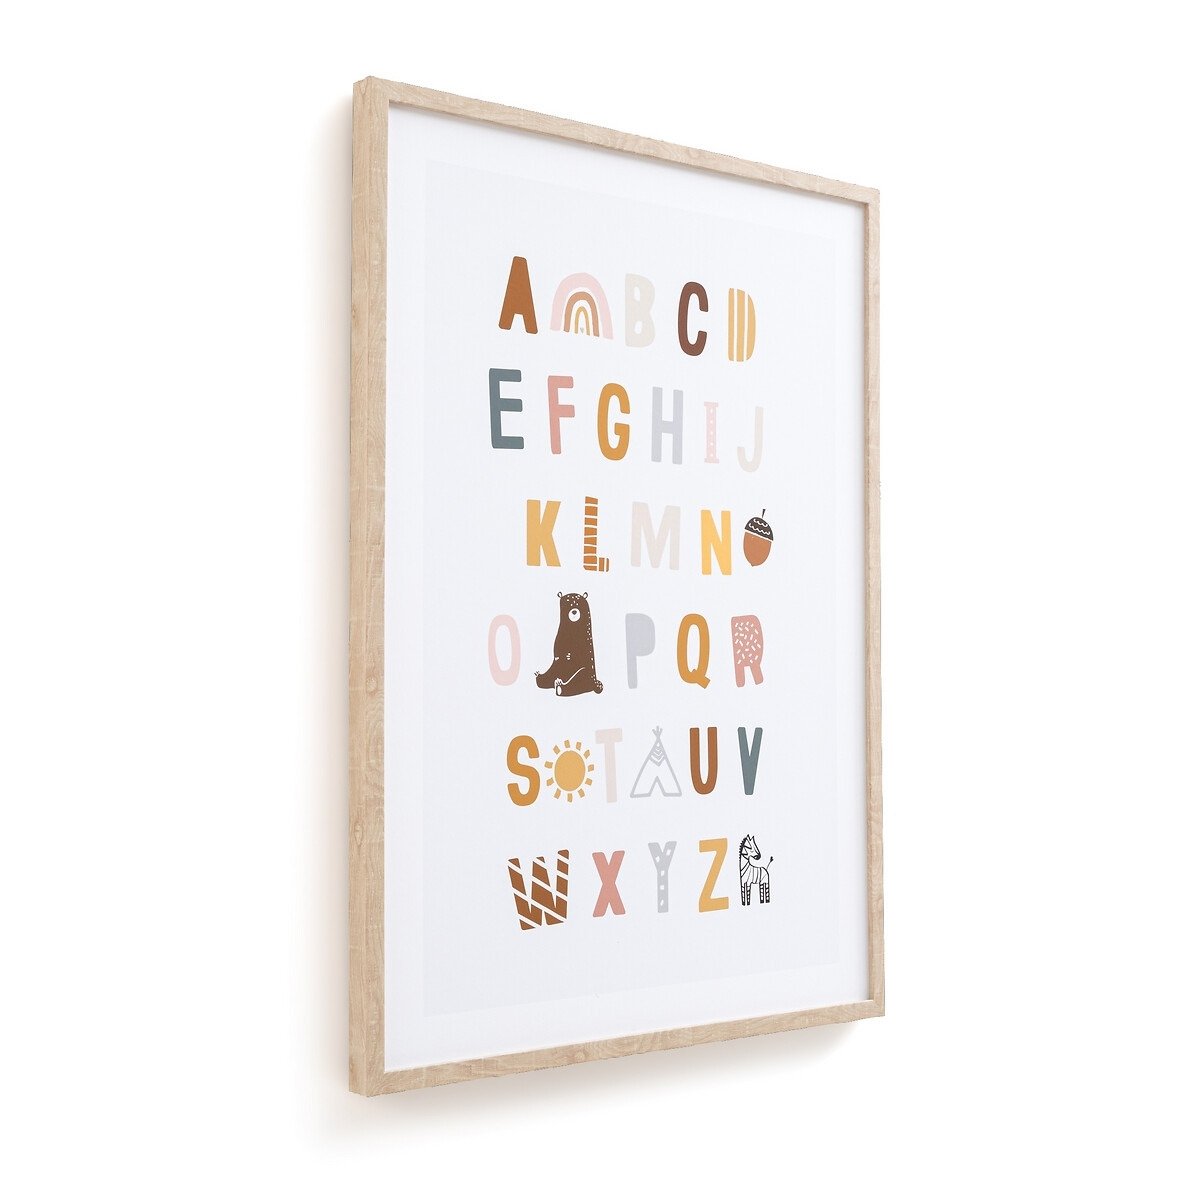 Ally Child's Framed Alphabet Print - image 1